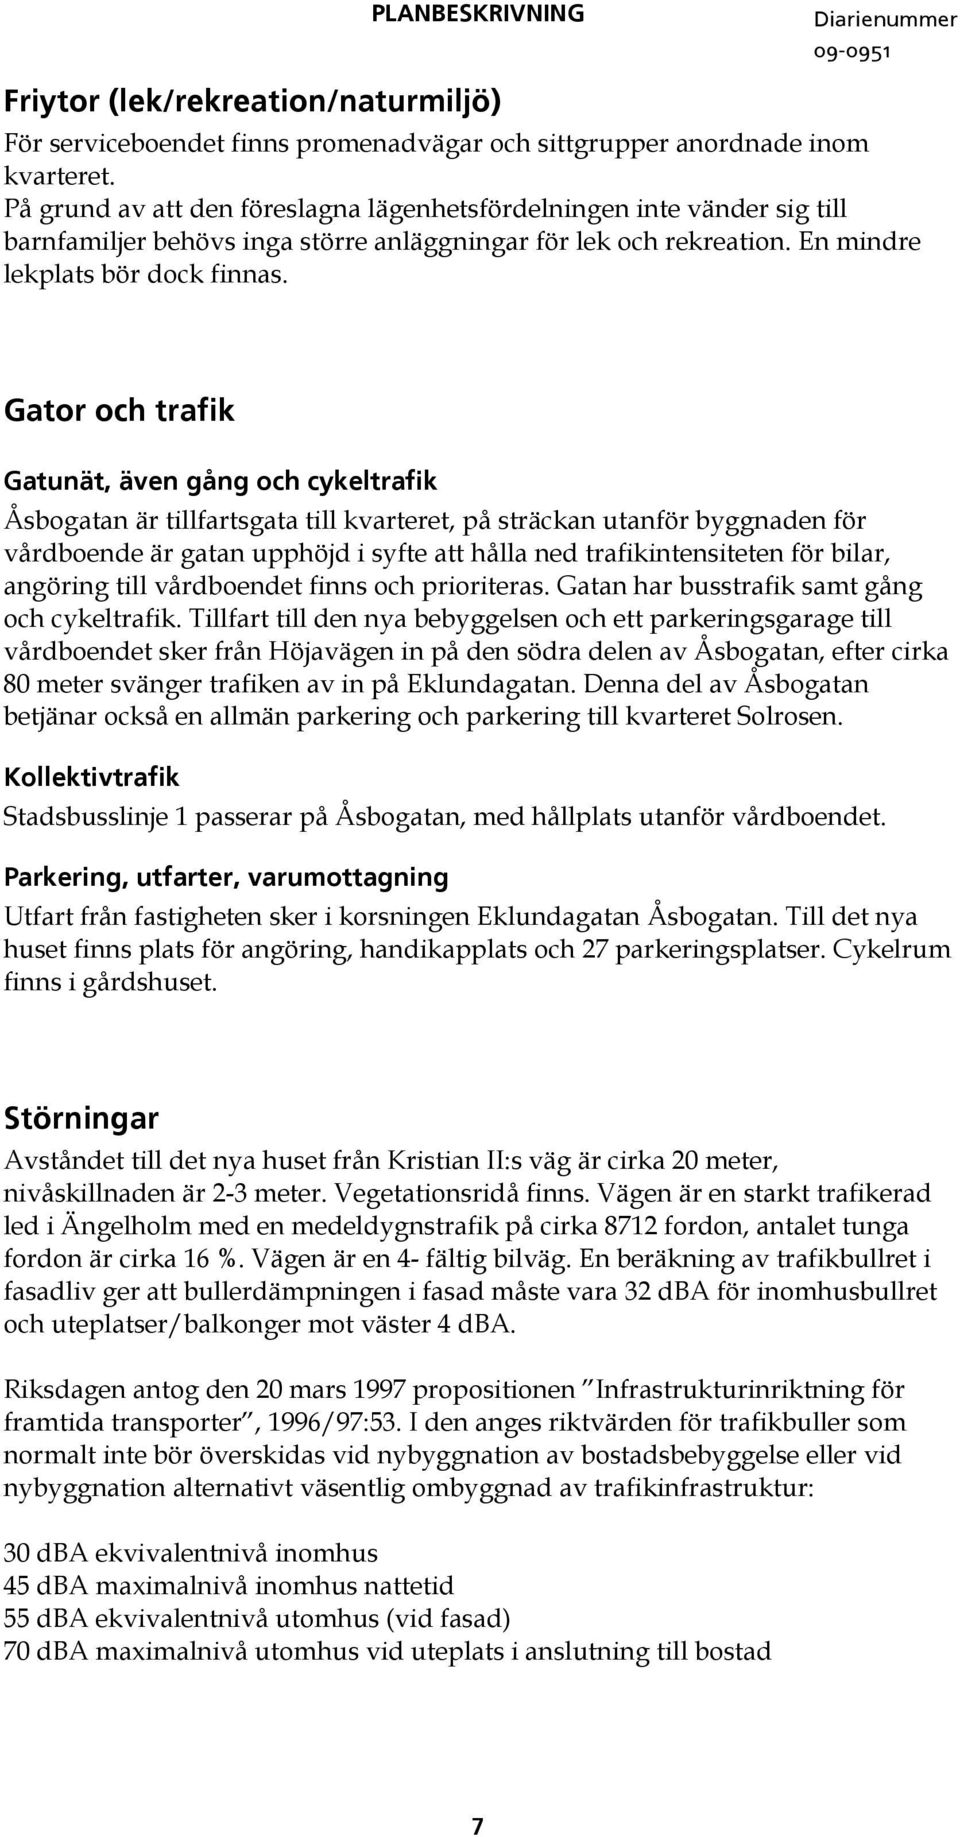 Gator och trafik Gatunät, även gång och cykeltrafik Åsbogatan är tillfartsgata till kvarteret, på sträckan utanför byggnaden för vårdboende är gatan upphöjd i syfte att hålla ned trafikintensiteten